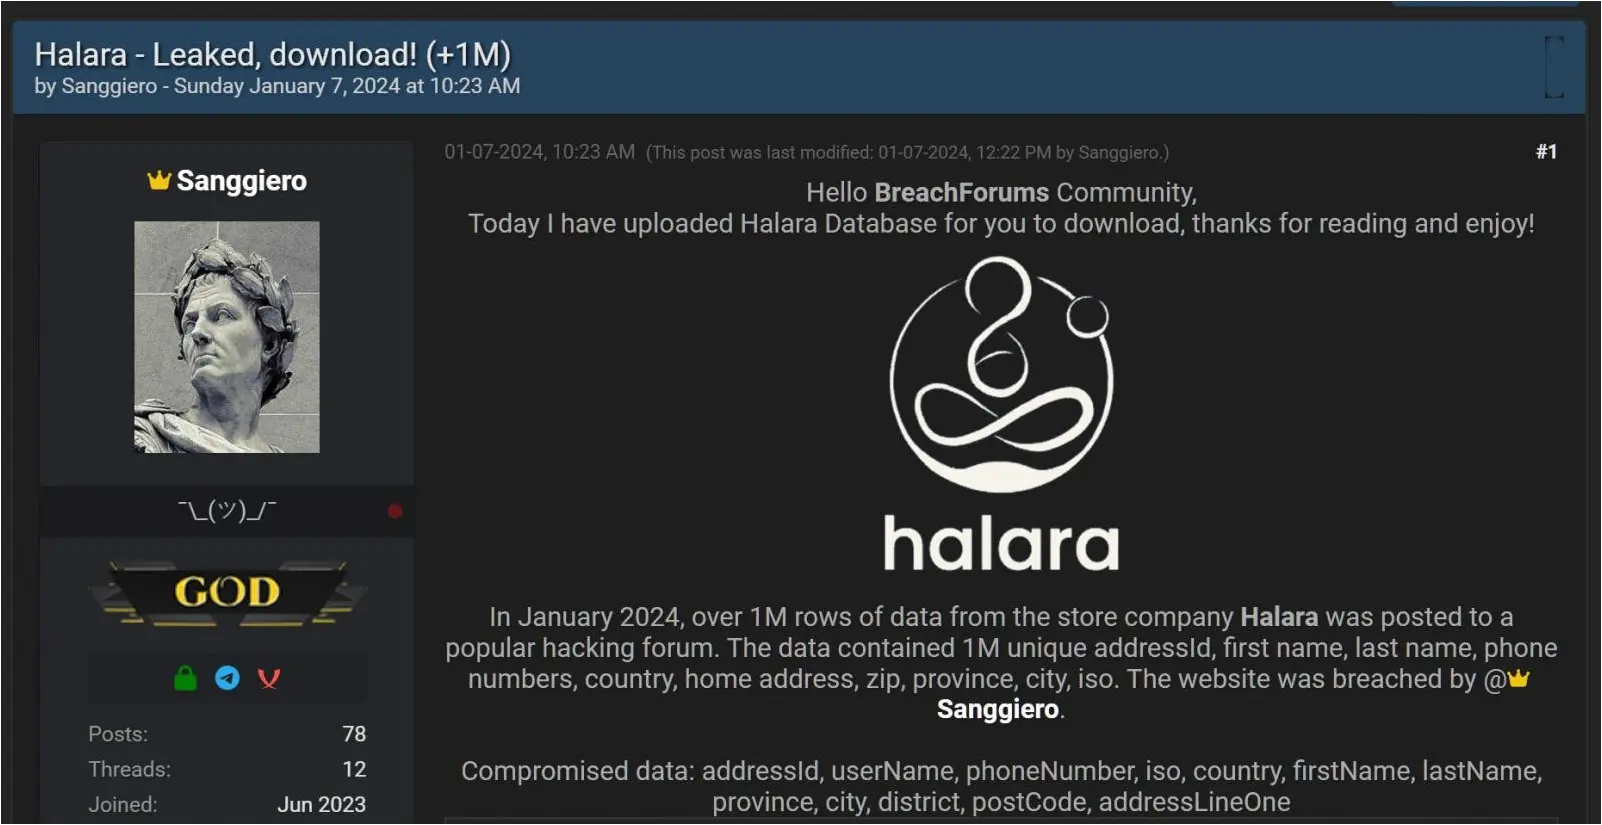 Forum post about alleged Halara data breach